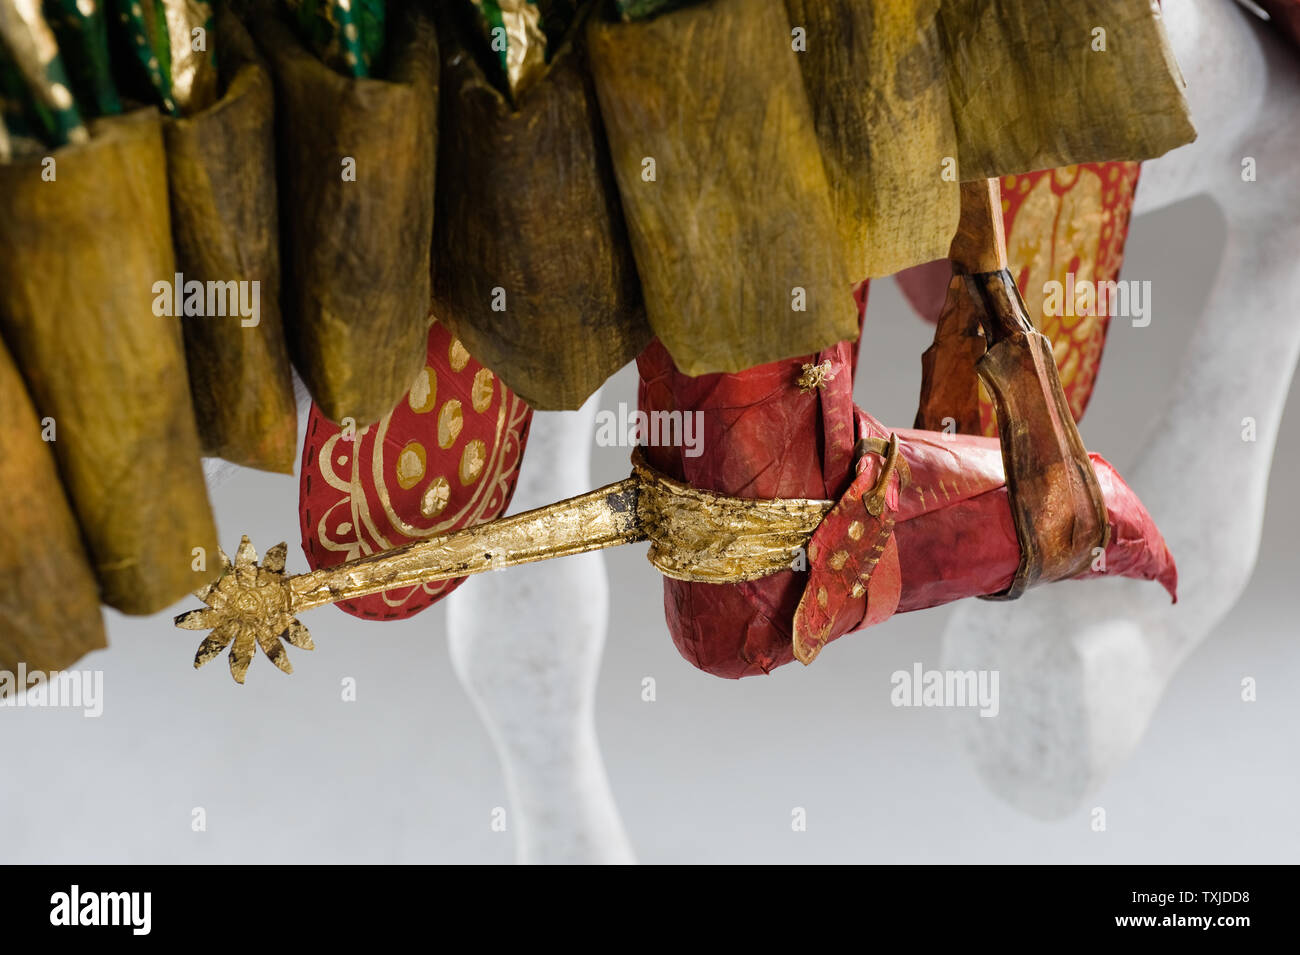 Dettaglio del piede con sperone di costume di carta di Isabelle de Borchgrave Foto Stock